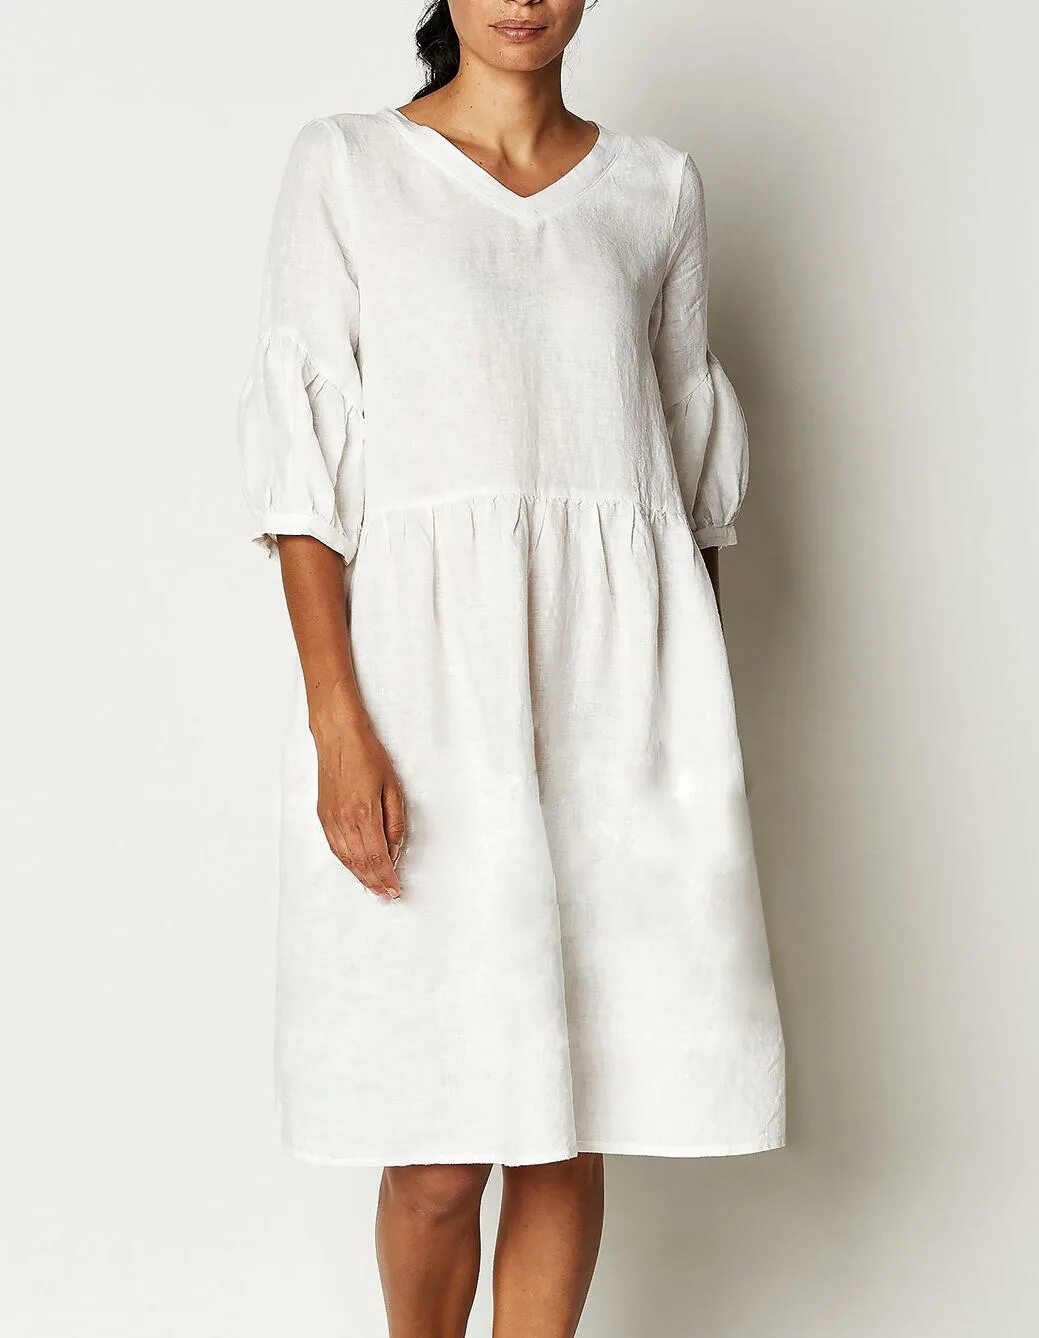 Платье лен белый. Платье из умягченного льна. Одежда из натурального льна. Платье из натурального льна. Платье лен белое.